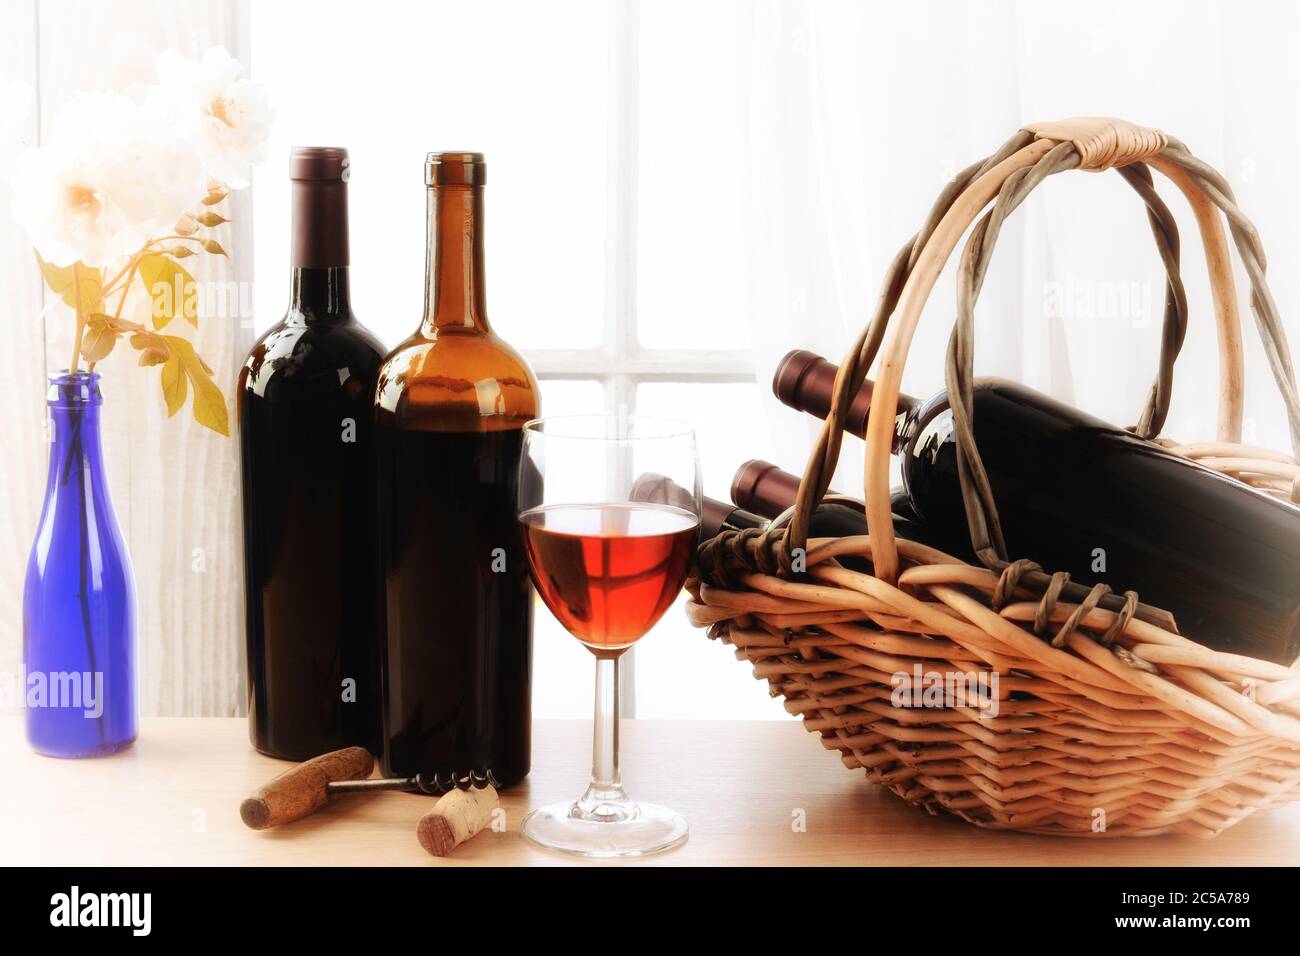 Wein Stillleben mit einem Korb von Flaschen und ein Glas Rotwein und weiße Rosen in einer Vase auf einem Tisch vor einem Fenster mit Vorhängen. Horizontal f Stockfoto